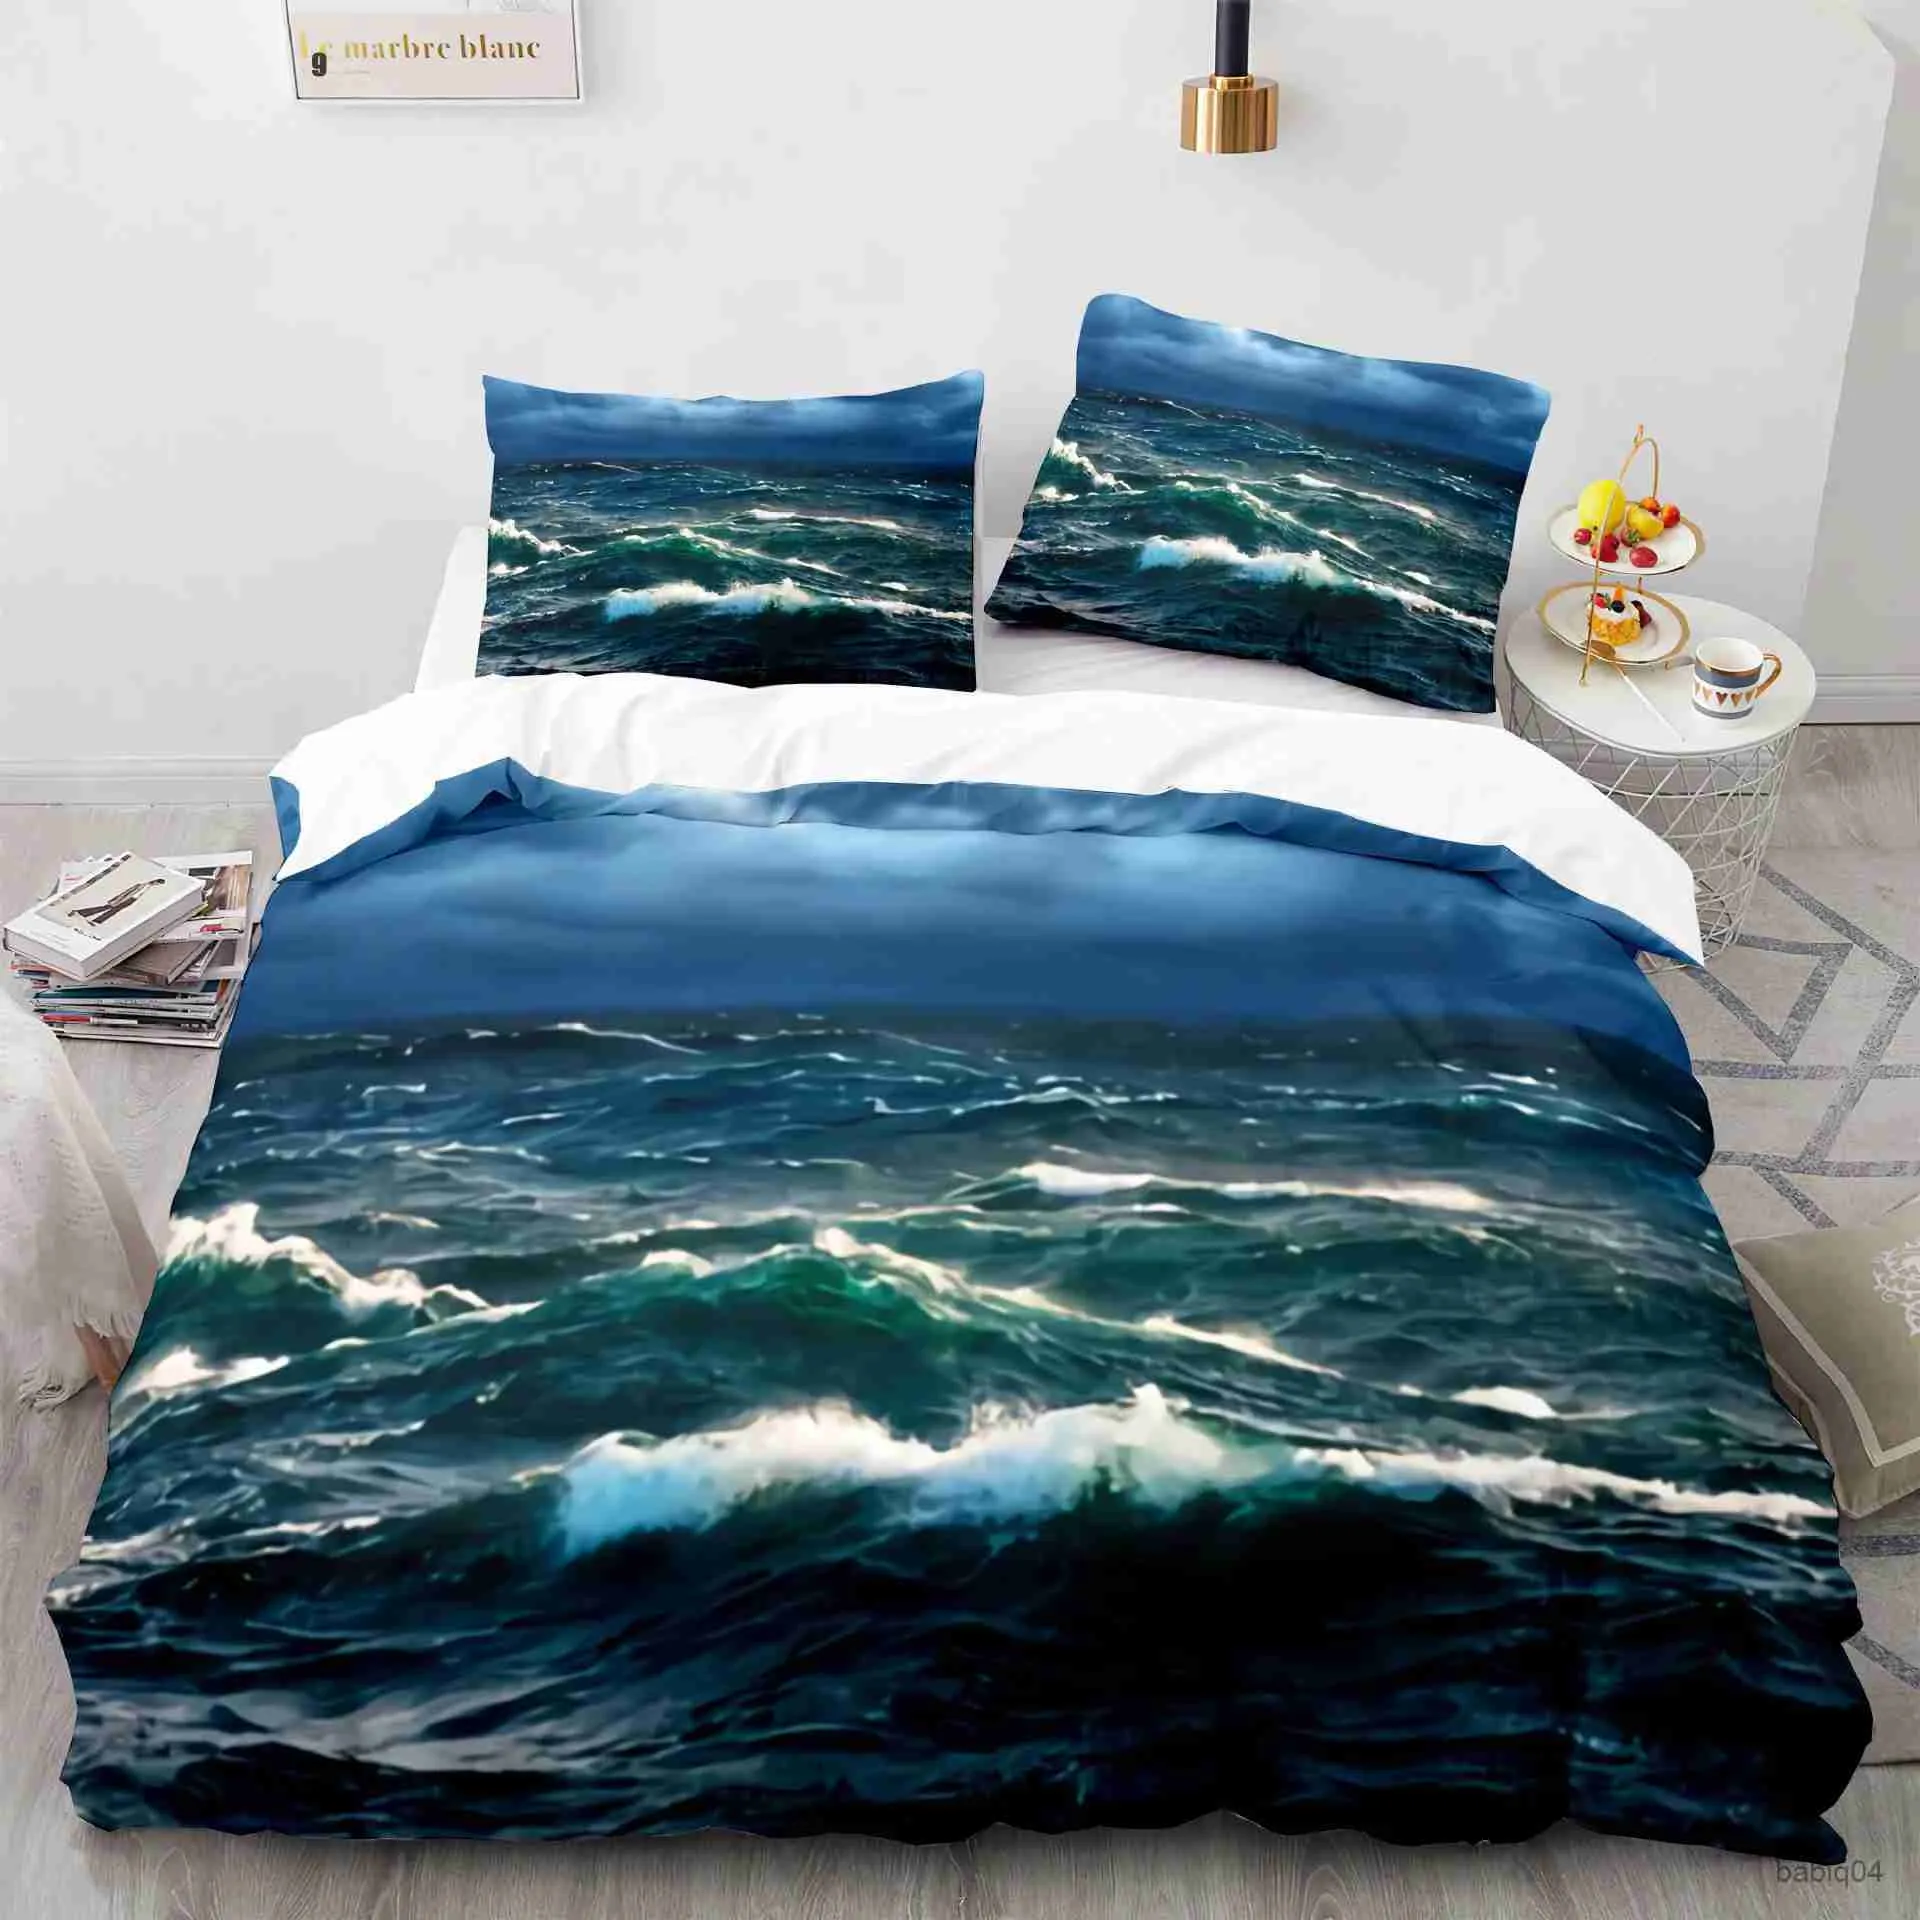 寝具セットシーウェーブ羽毛布団カバービーチレインボー寝具セット海辺の掛け布団カバークイーン/キング/フル/ツインサイズのキルトカバー